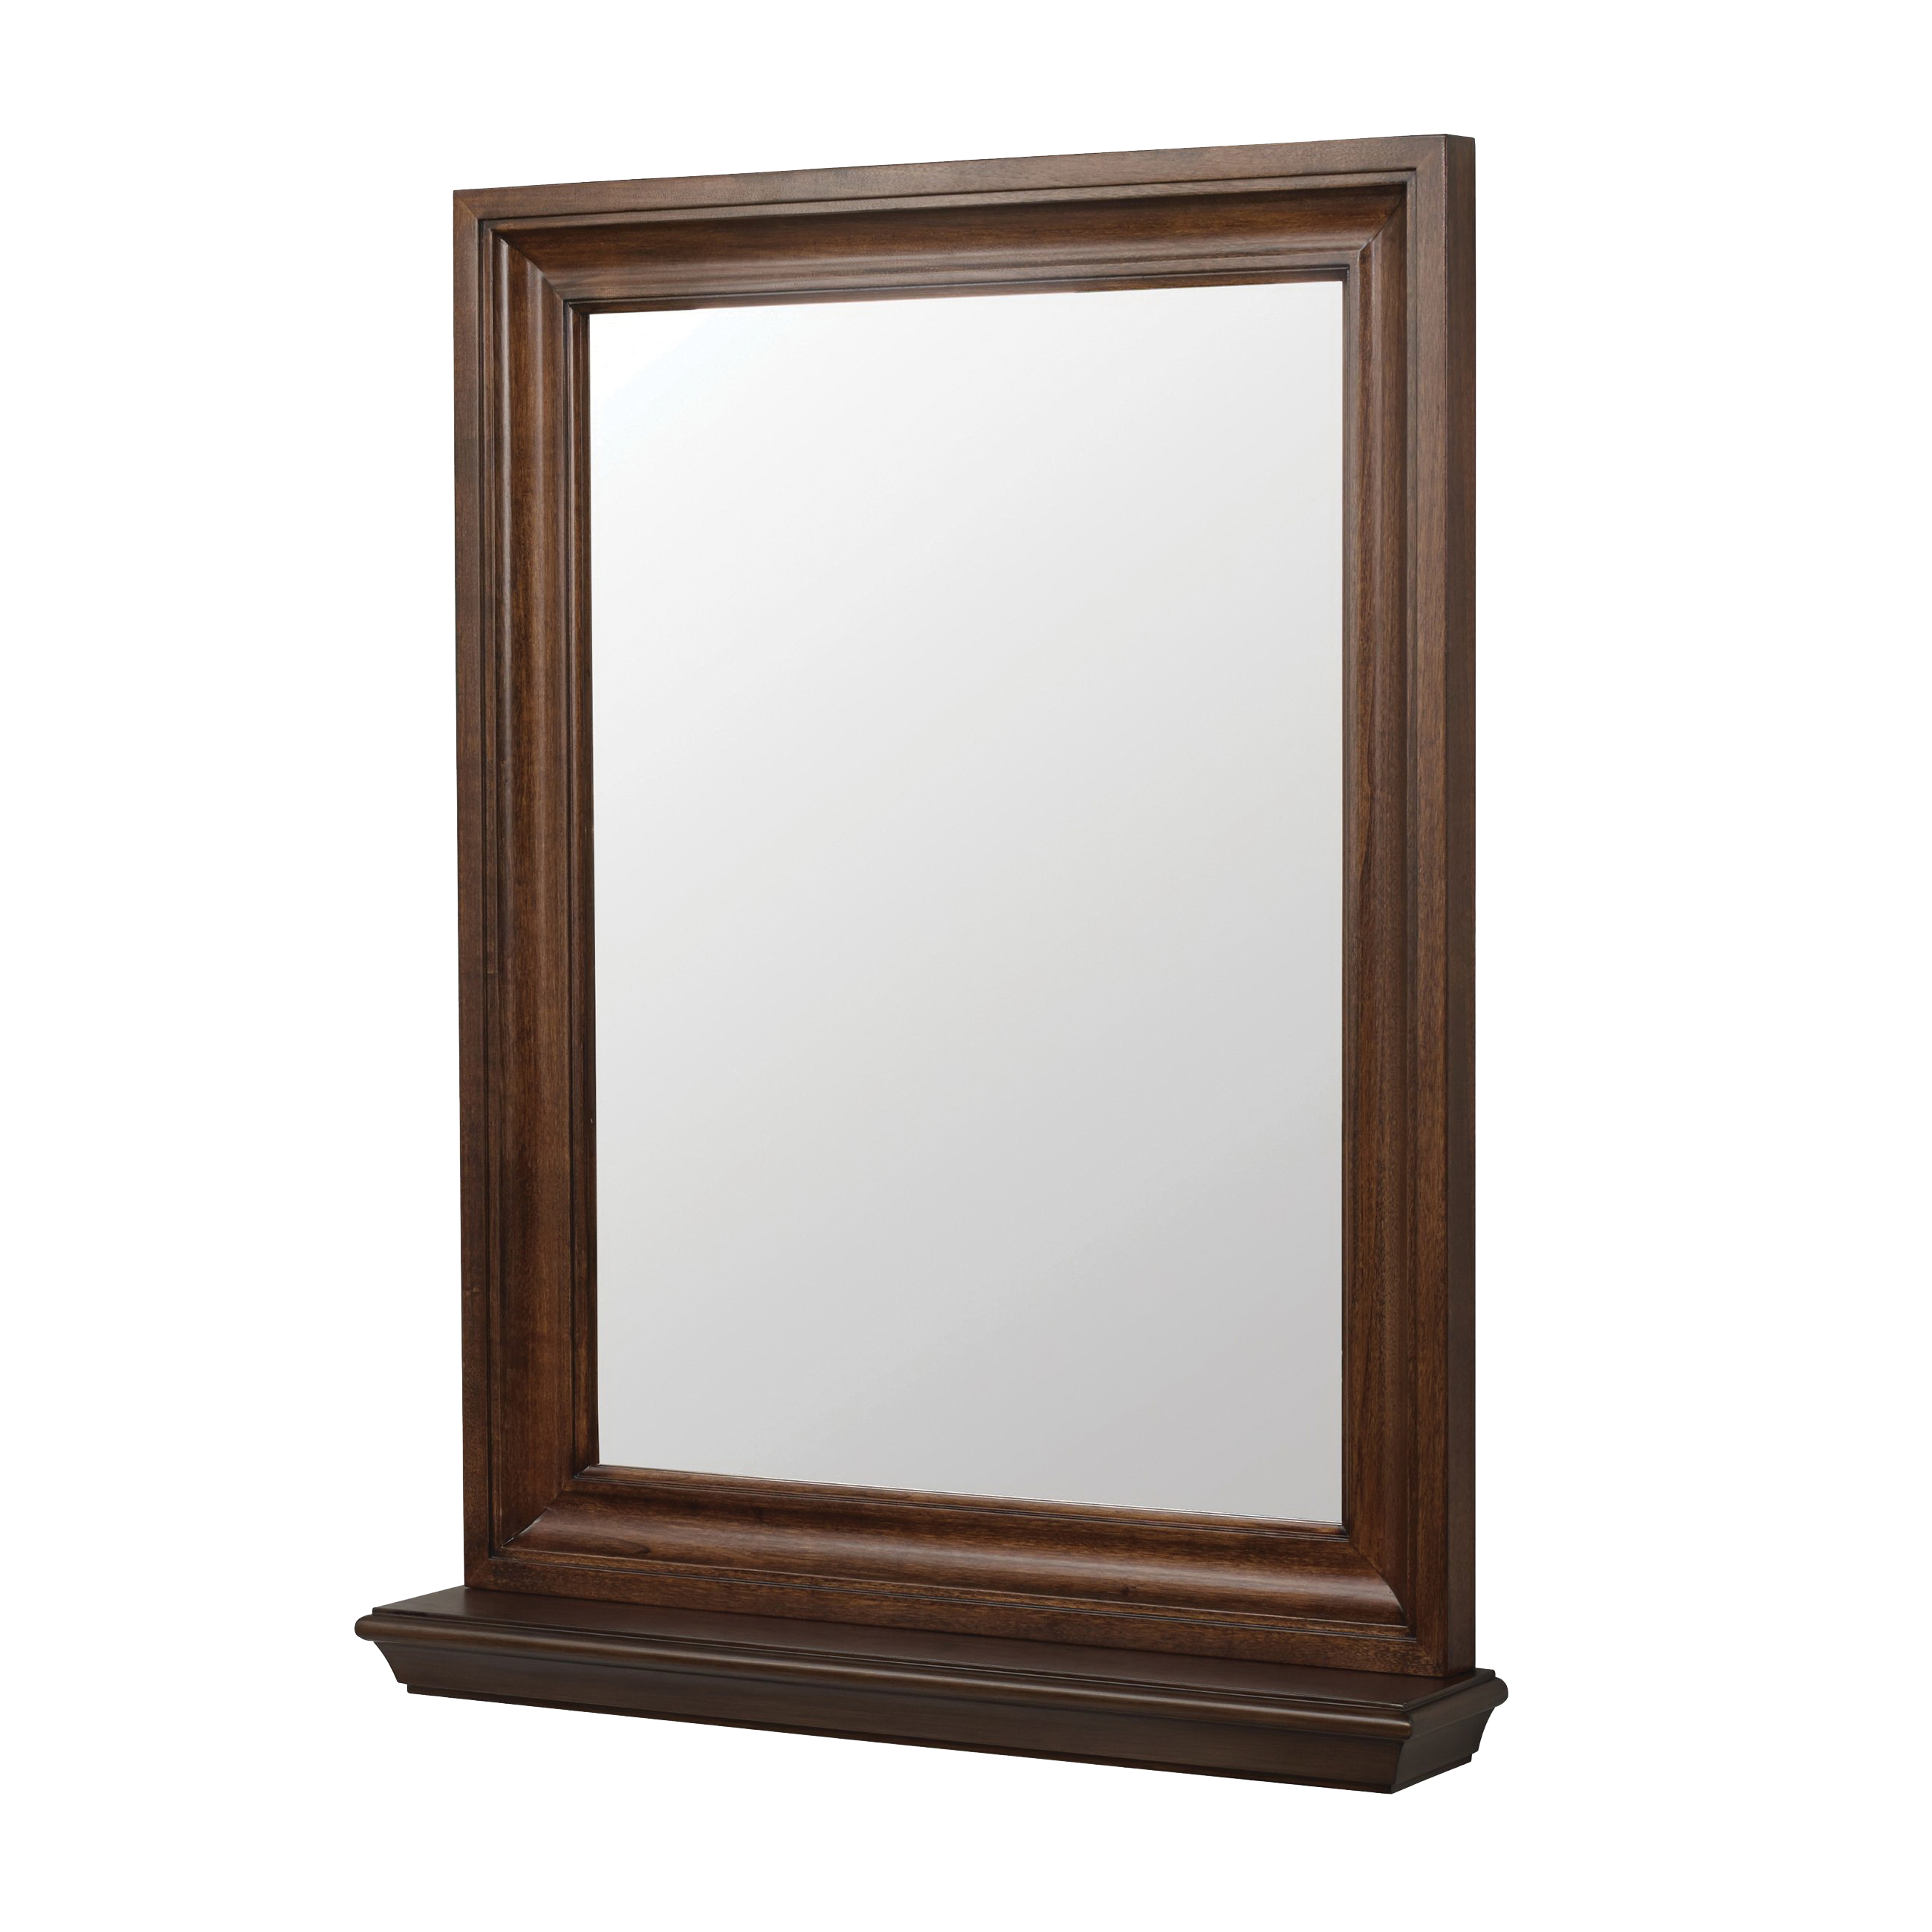 Cherie Series CHNM2430 Framed Mirror, Rectangular, 24 in W, 30 in H, Wood Frame, Dark Walnut Frame